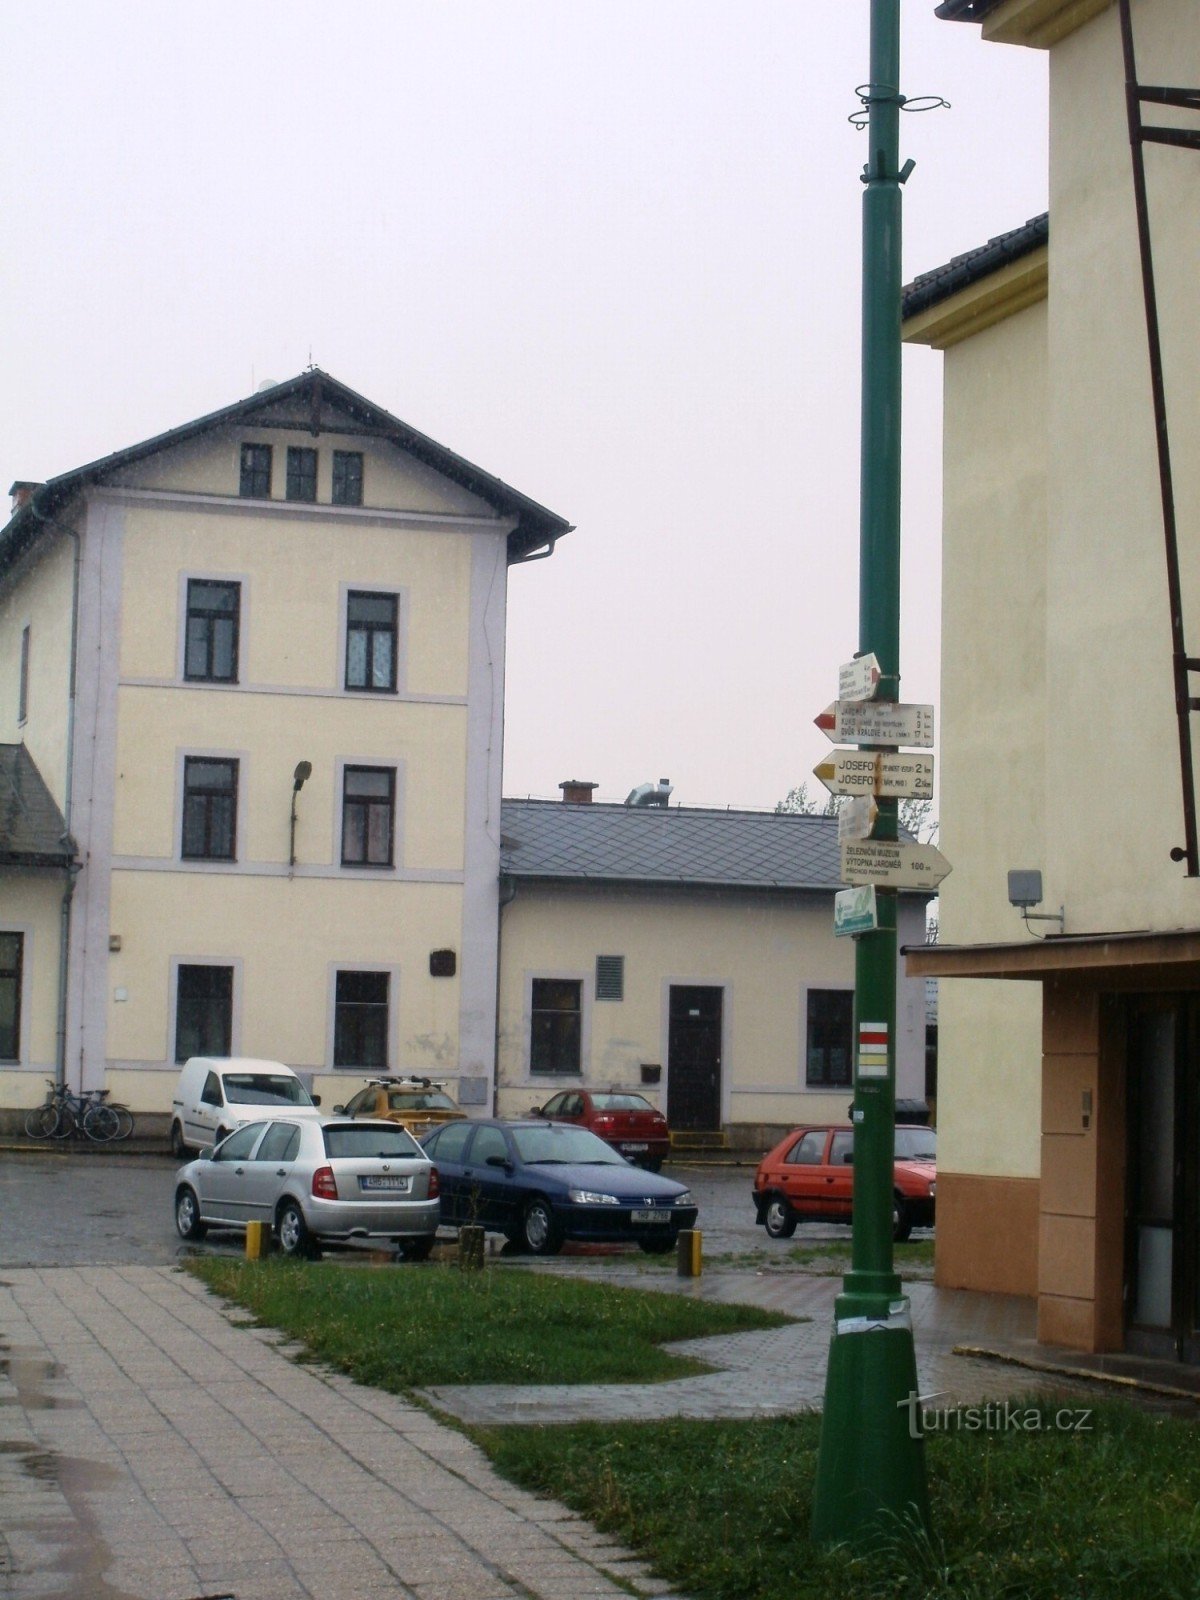 τουριστικό σταυροδρόμι Jaroměř - σιδηρόδρομος, σιδηροδρομικός σταθμός